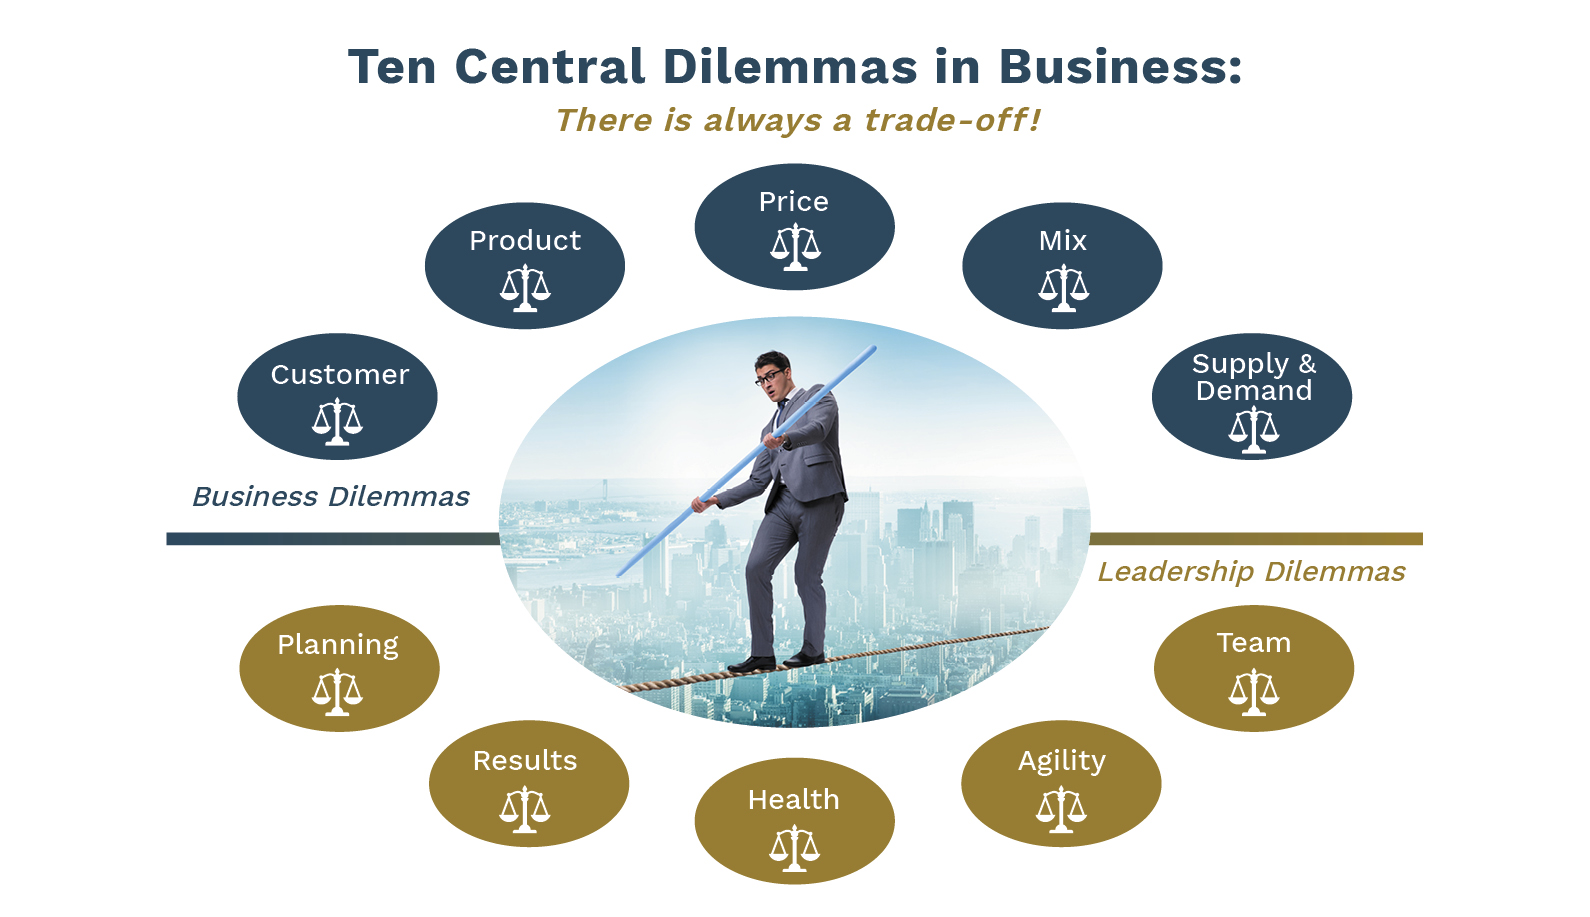 Ten Central Dilemmas in Business